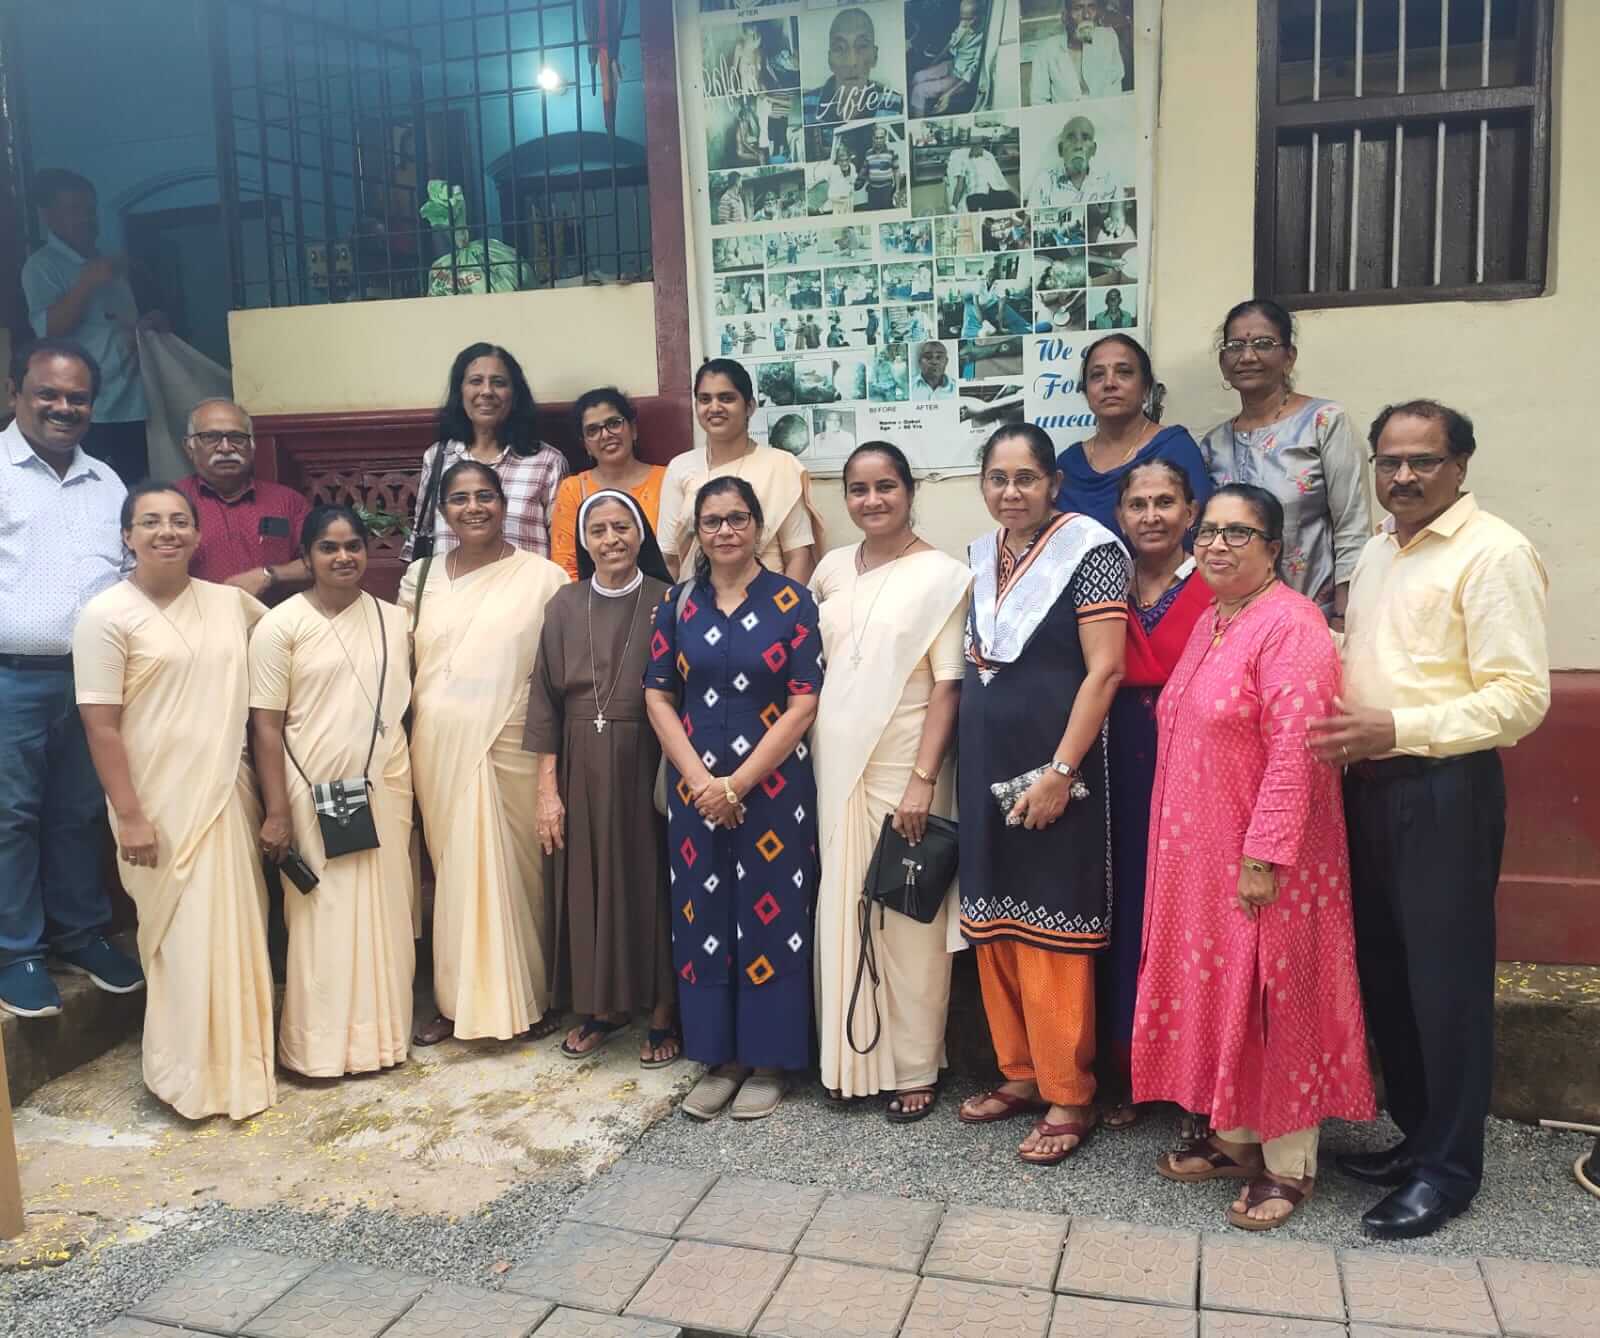 Arsulain Franciscan members of Rosario Church visited Karunamaya ashram